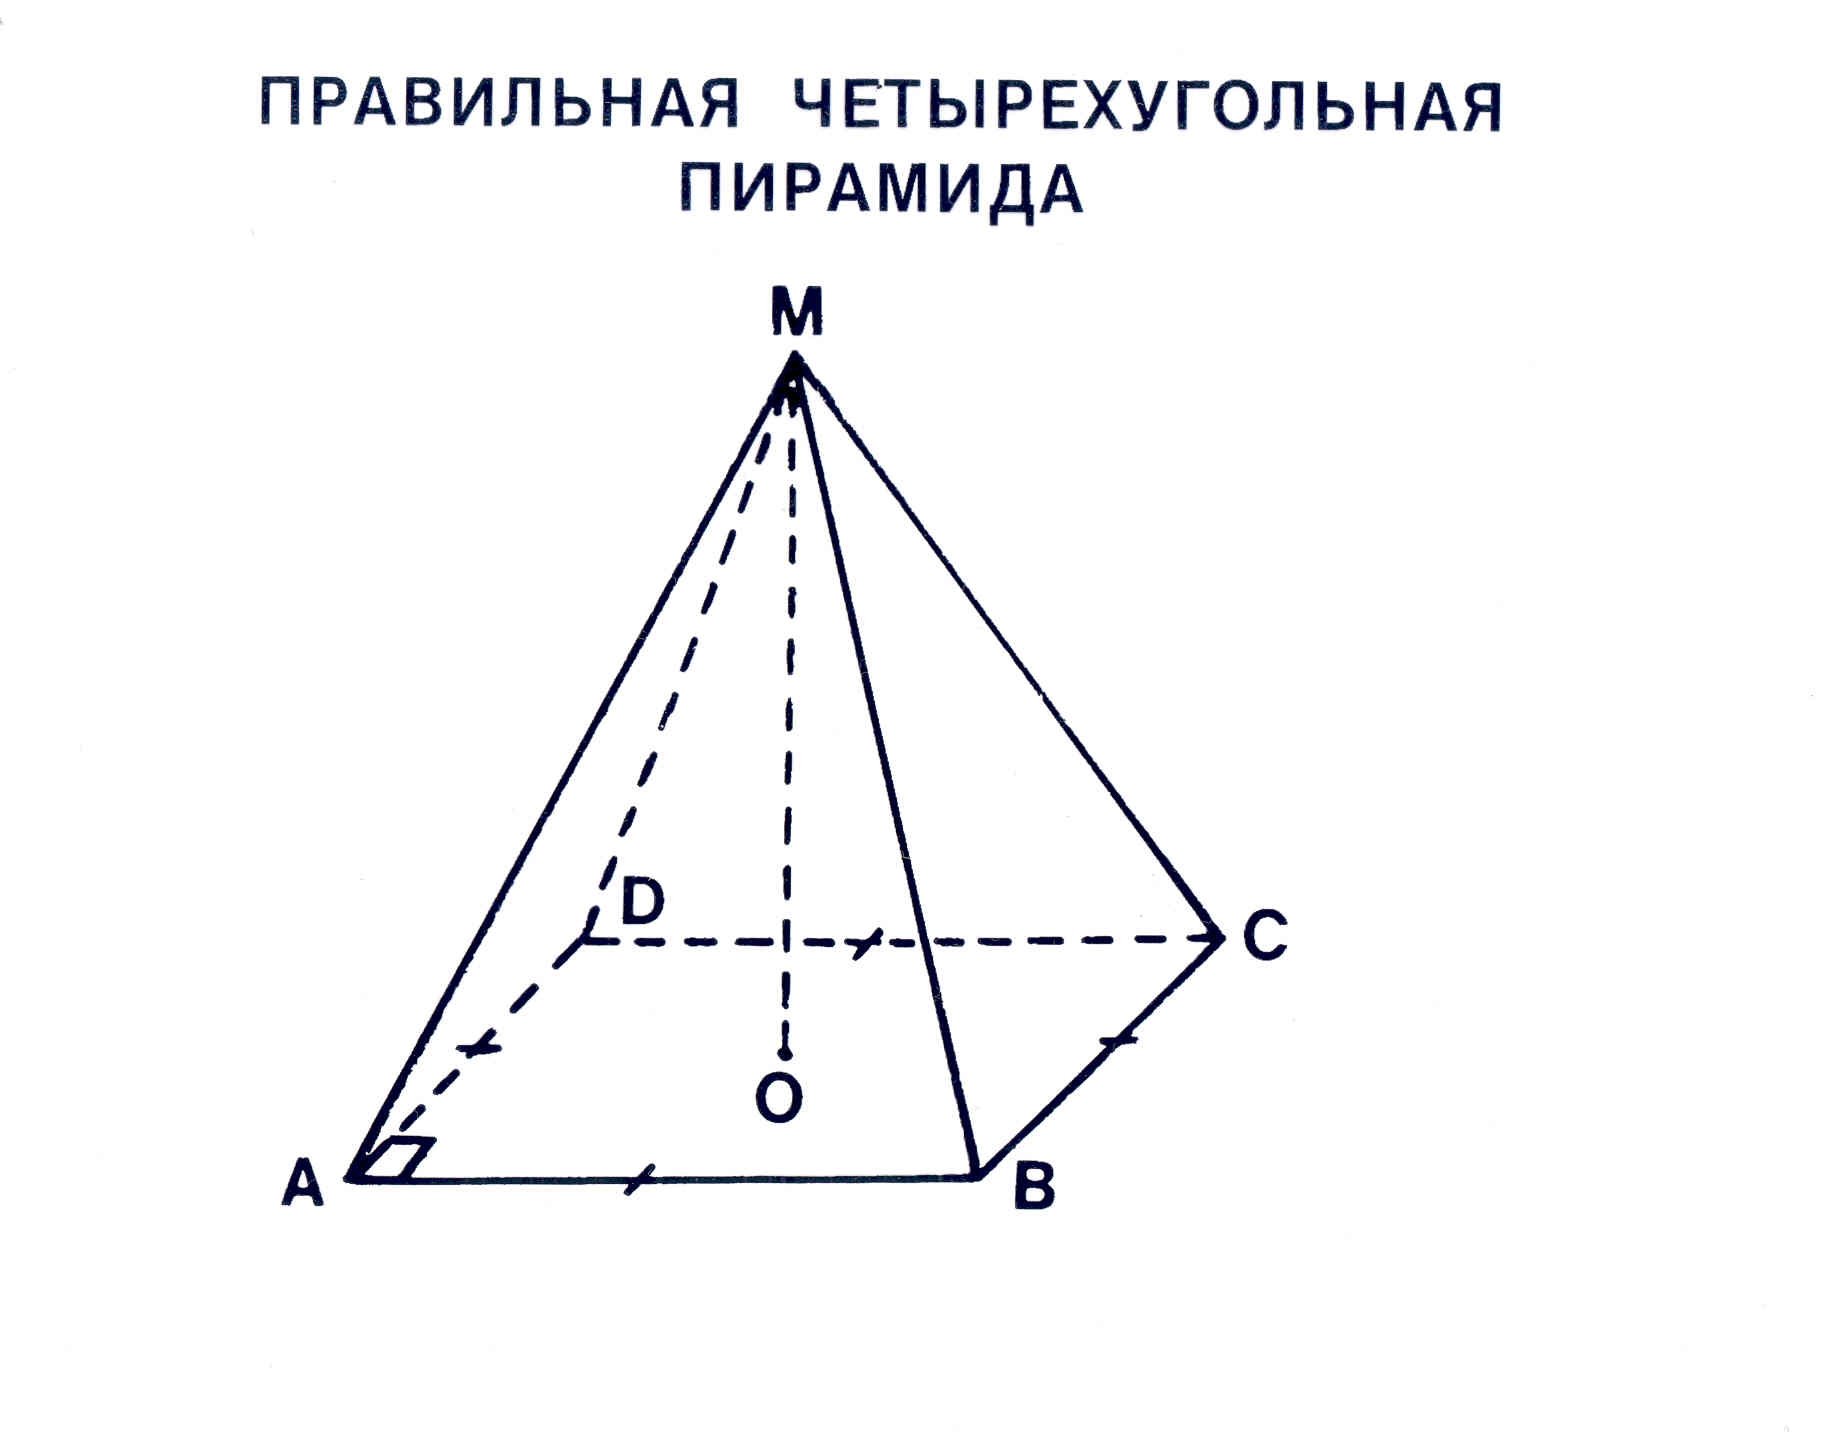 Четырех угольная пирамида. Правильнаячетырхугольная пирамида. Правильная четырехугольная пирамидаунок. Правильная четырехугольная пирамида. Четырехугольная пирамида (основание со сторонами 45мм, высота 70мм),.